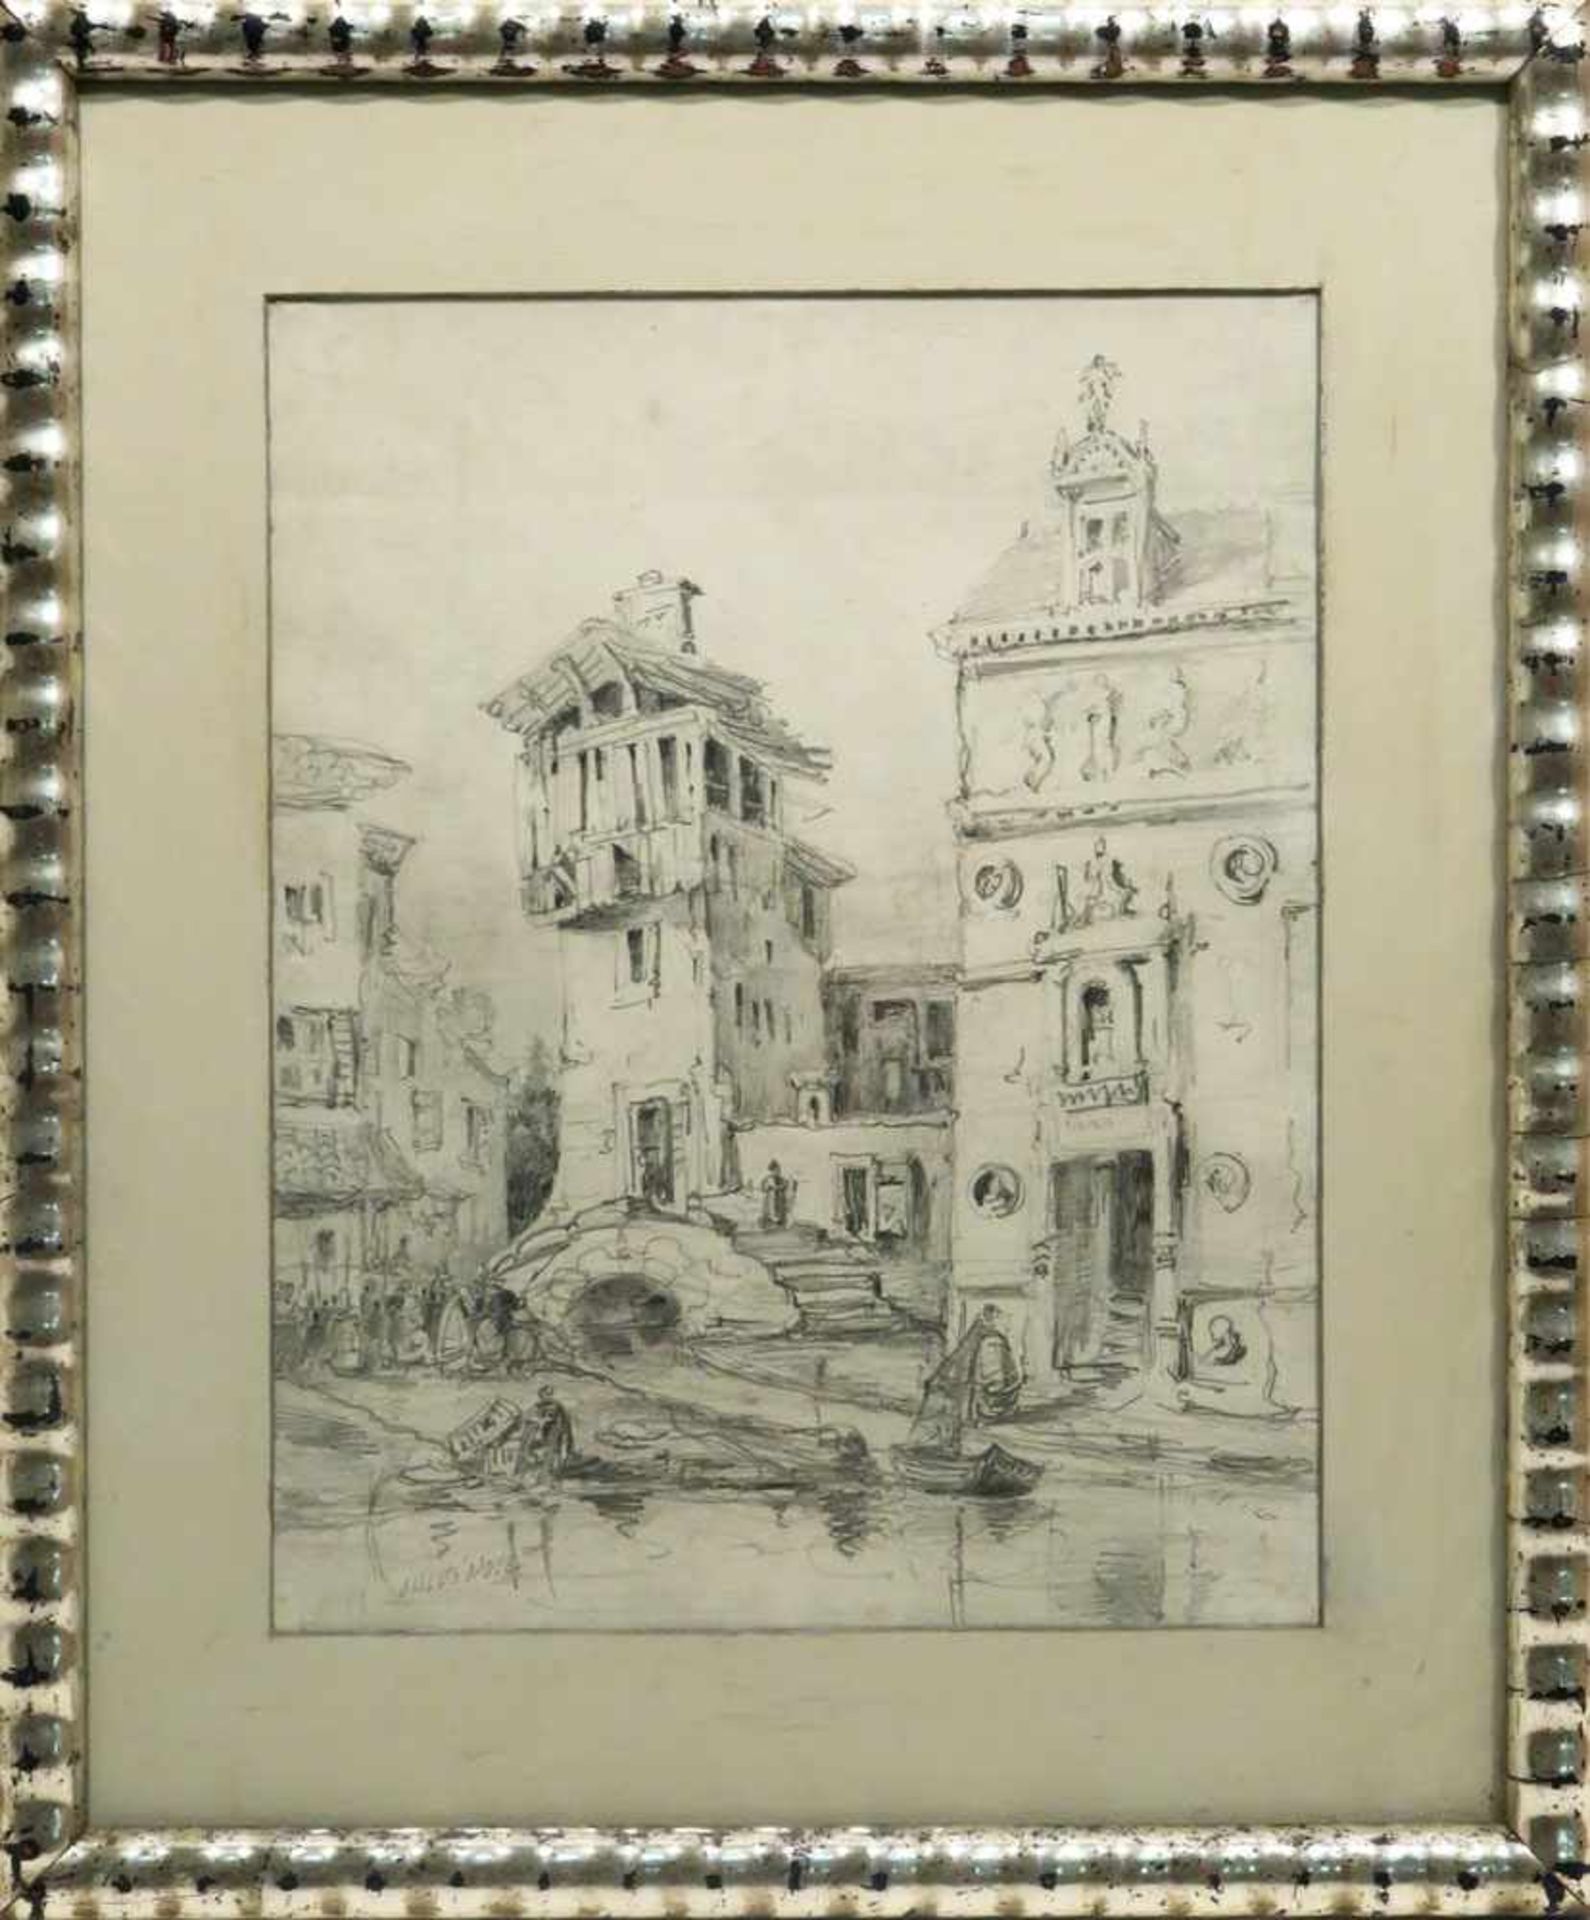 Noël, Jules Achille um 1815 Quimper - 1881 Algier "Hafenstadt" Bleistiftzeichnung. BA: 29,5 x 23,5